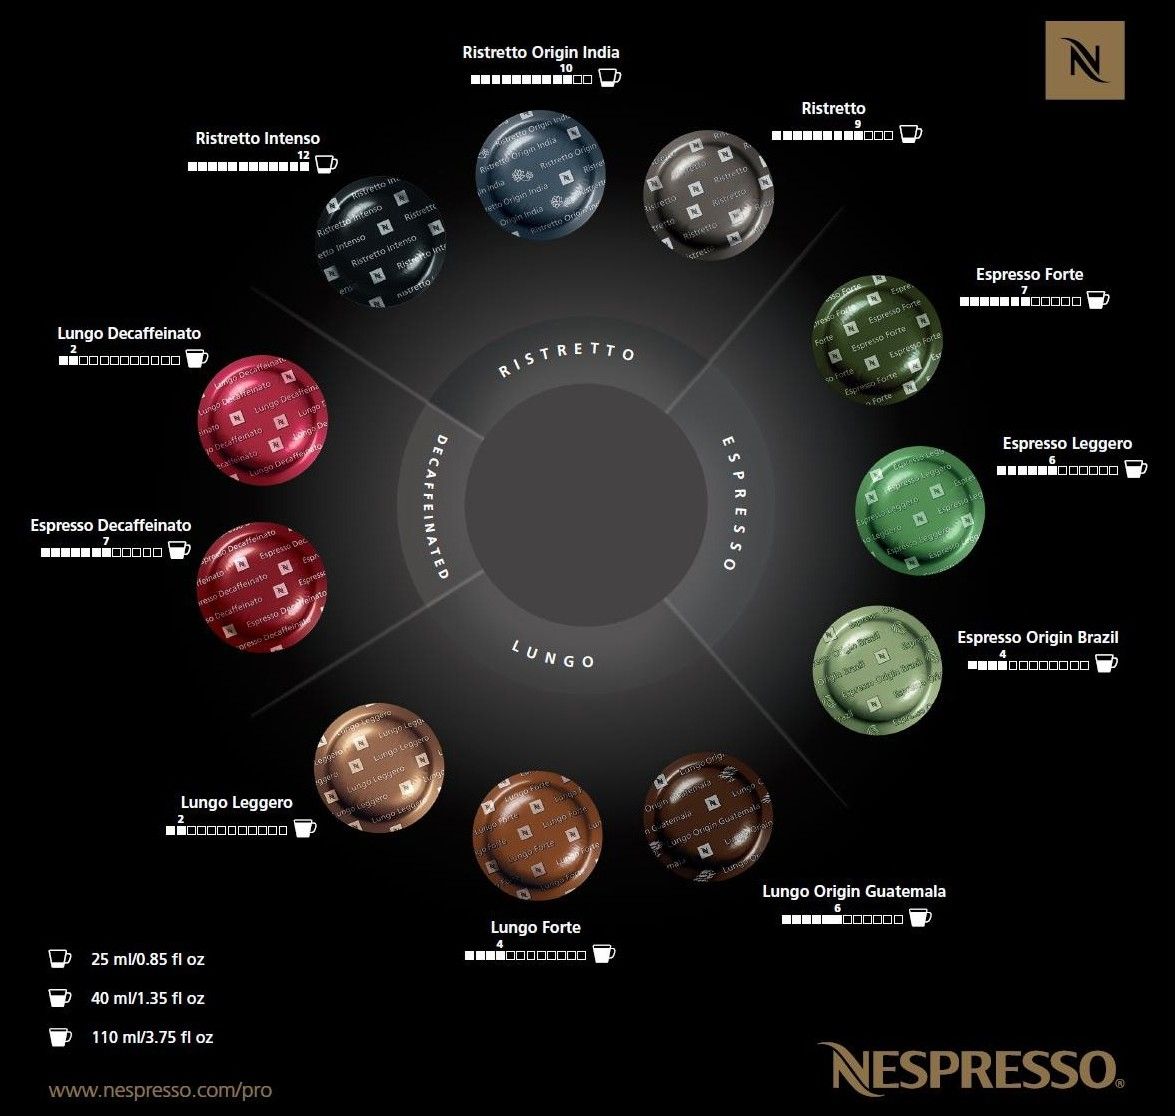 Tuttofood 2015 Nespresso Presenterà Due Nuovi Grand Cru Pure Origin